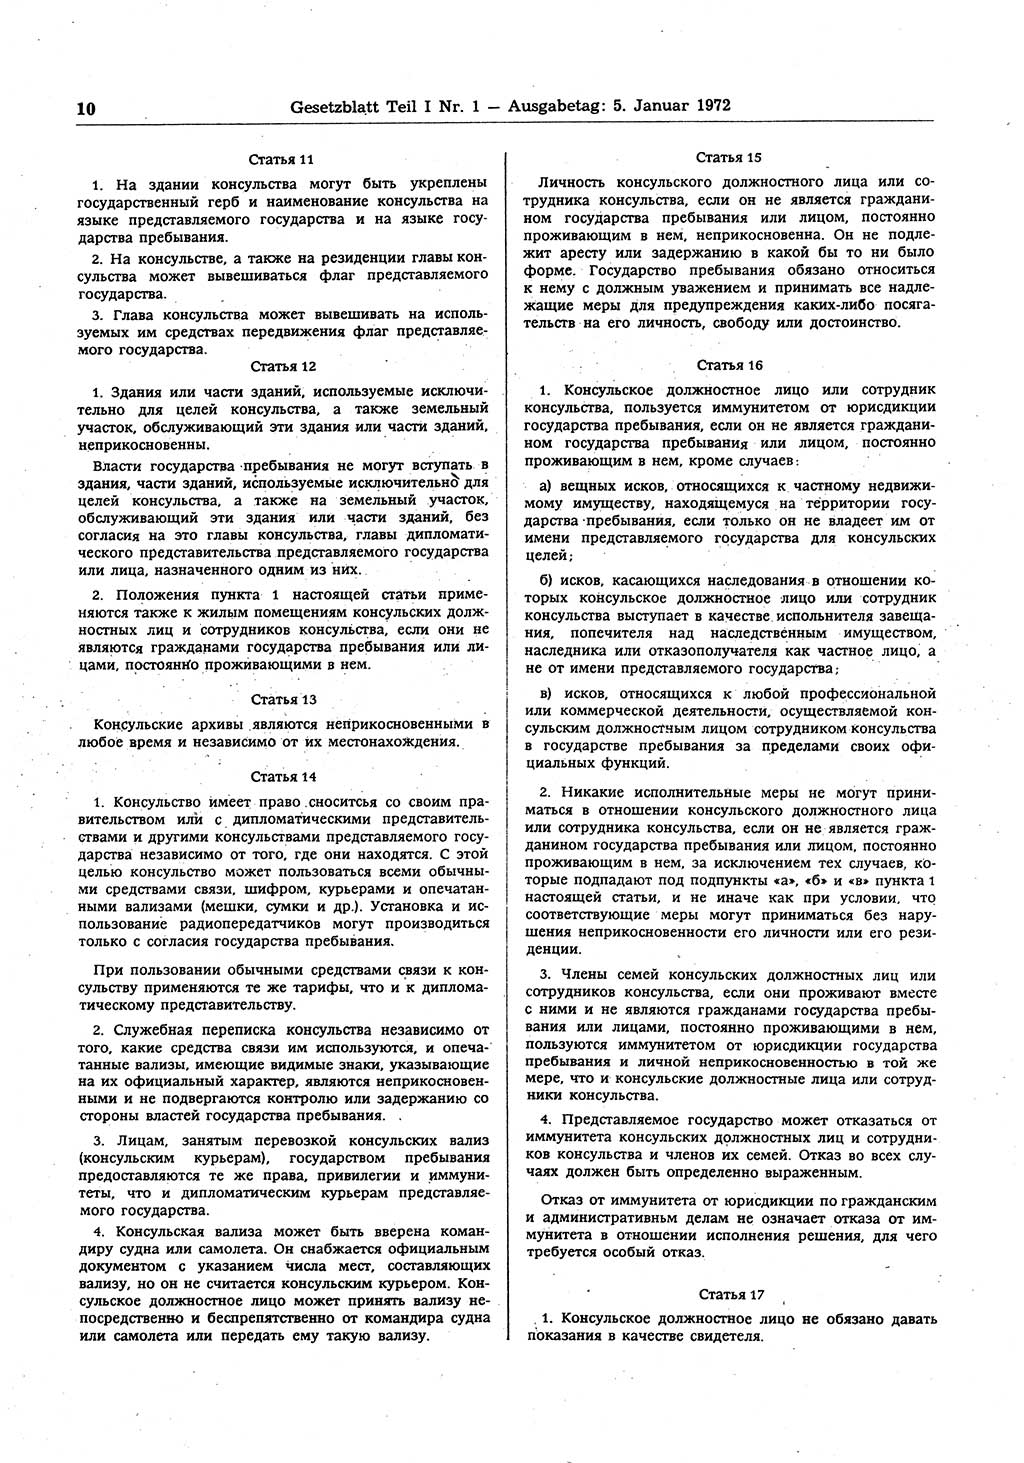 Gesetzblatt (GBl.) der Deutschen Demokratischen Republik (DDR) Teil Ⅰ 1972, Seite 10 (GBl. DDR Ⅰ 1972, S. 10)